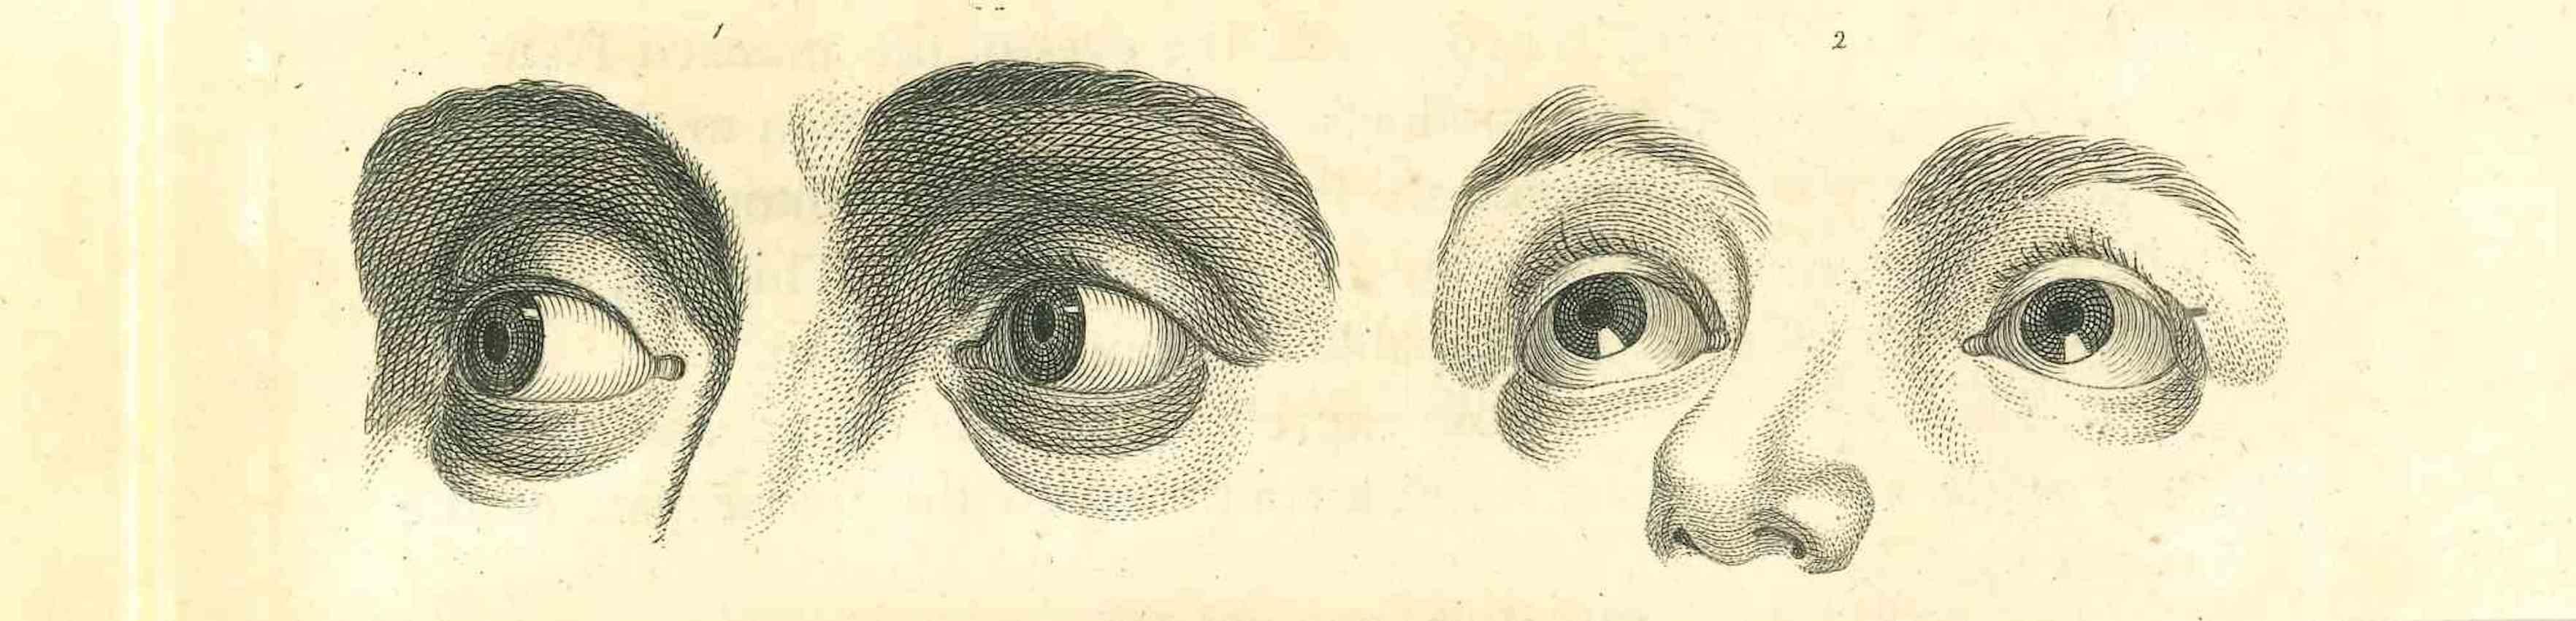 The Physiognomy - The Eyes ist eine Original-Radierung von Thomas Holloway für Johann Caspar Lavaters "Essays on Physiognomy, Designed to Promote the Knowledge and the Love of Mankind", London, Bensley, 1810. 

Gute Bedingungen.

Mit Notizen auf der